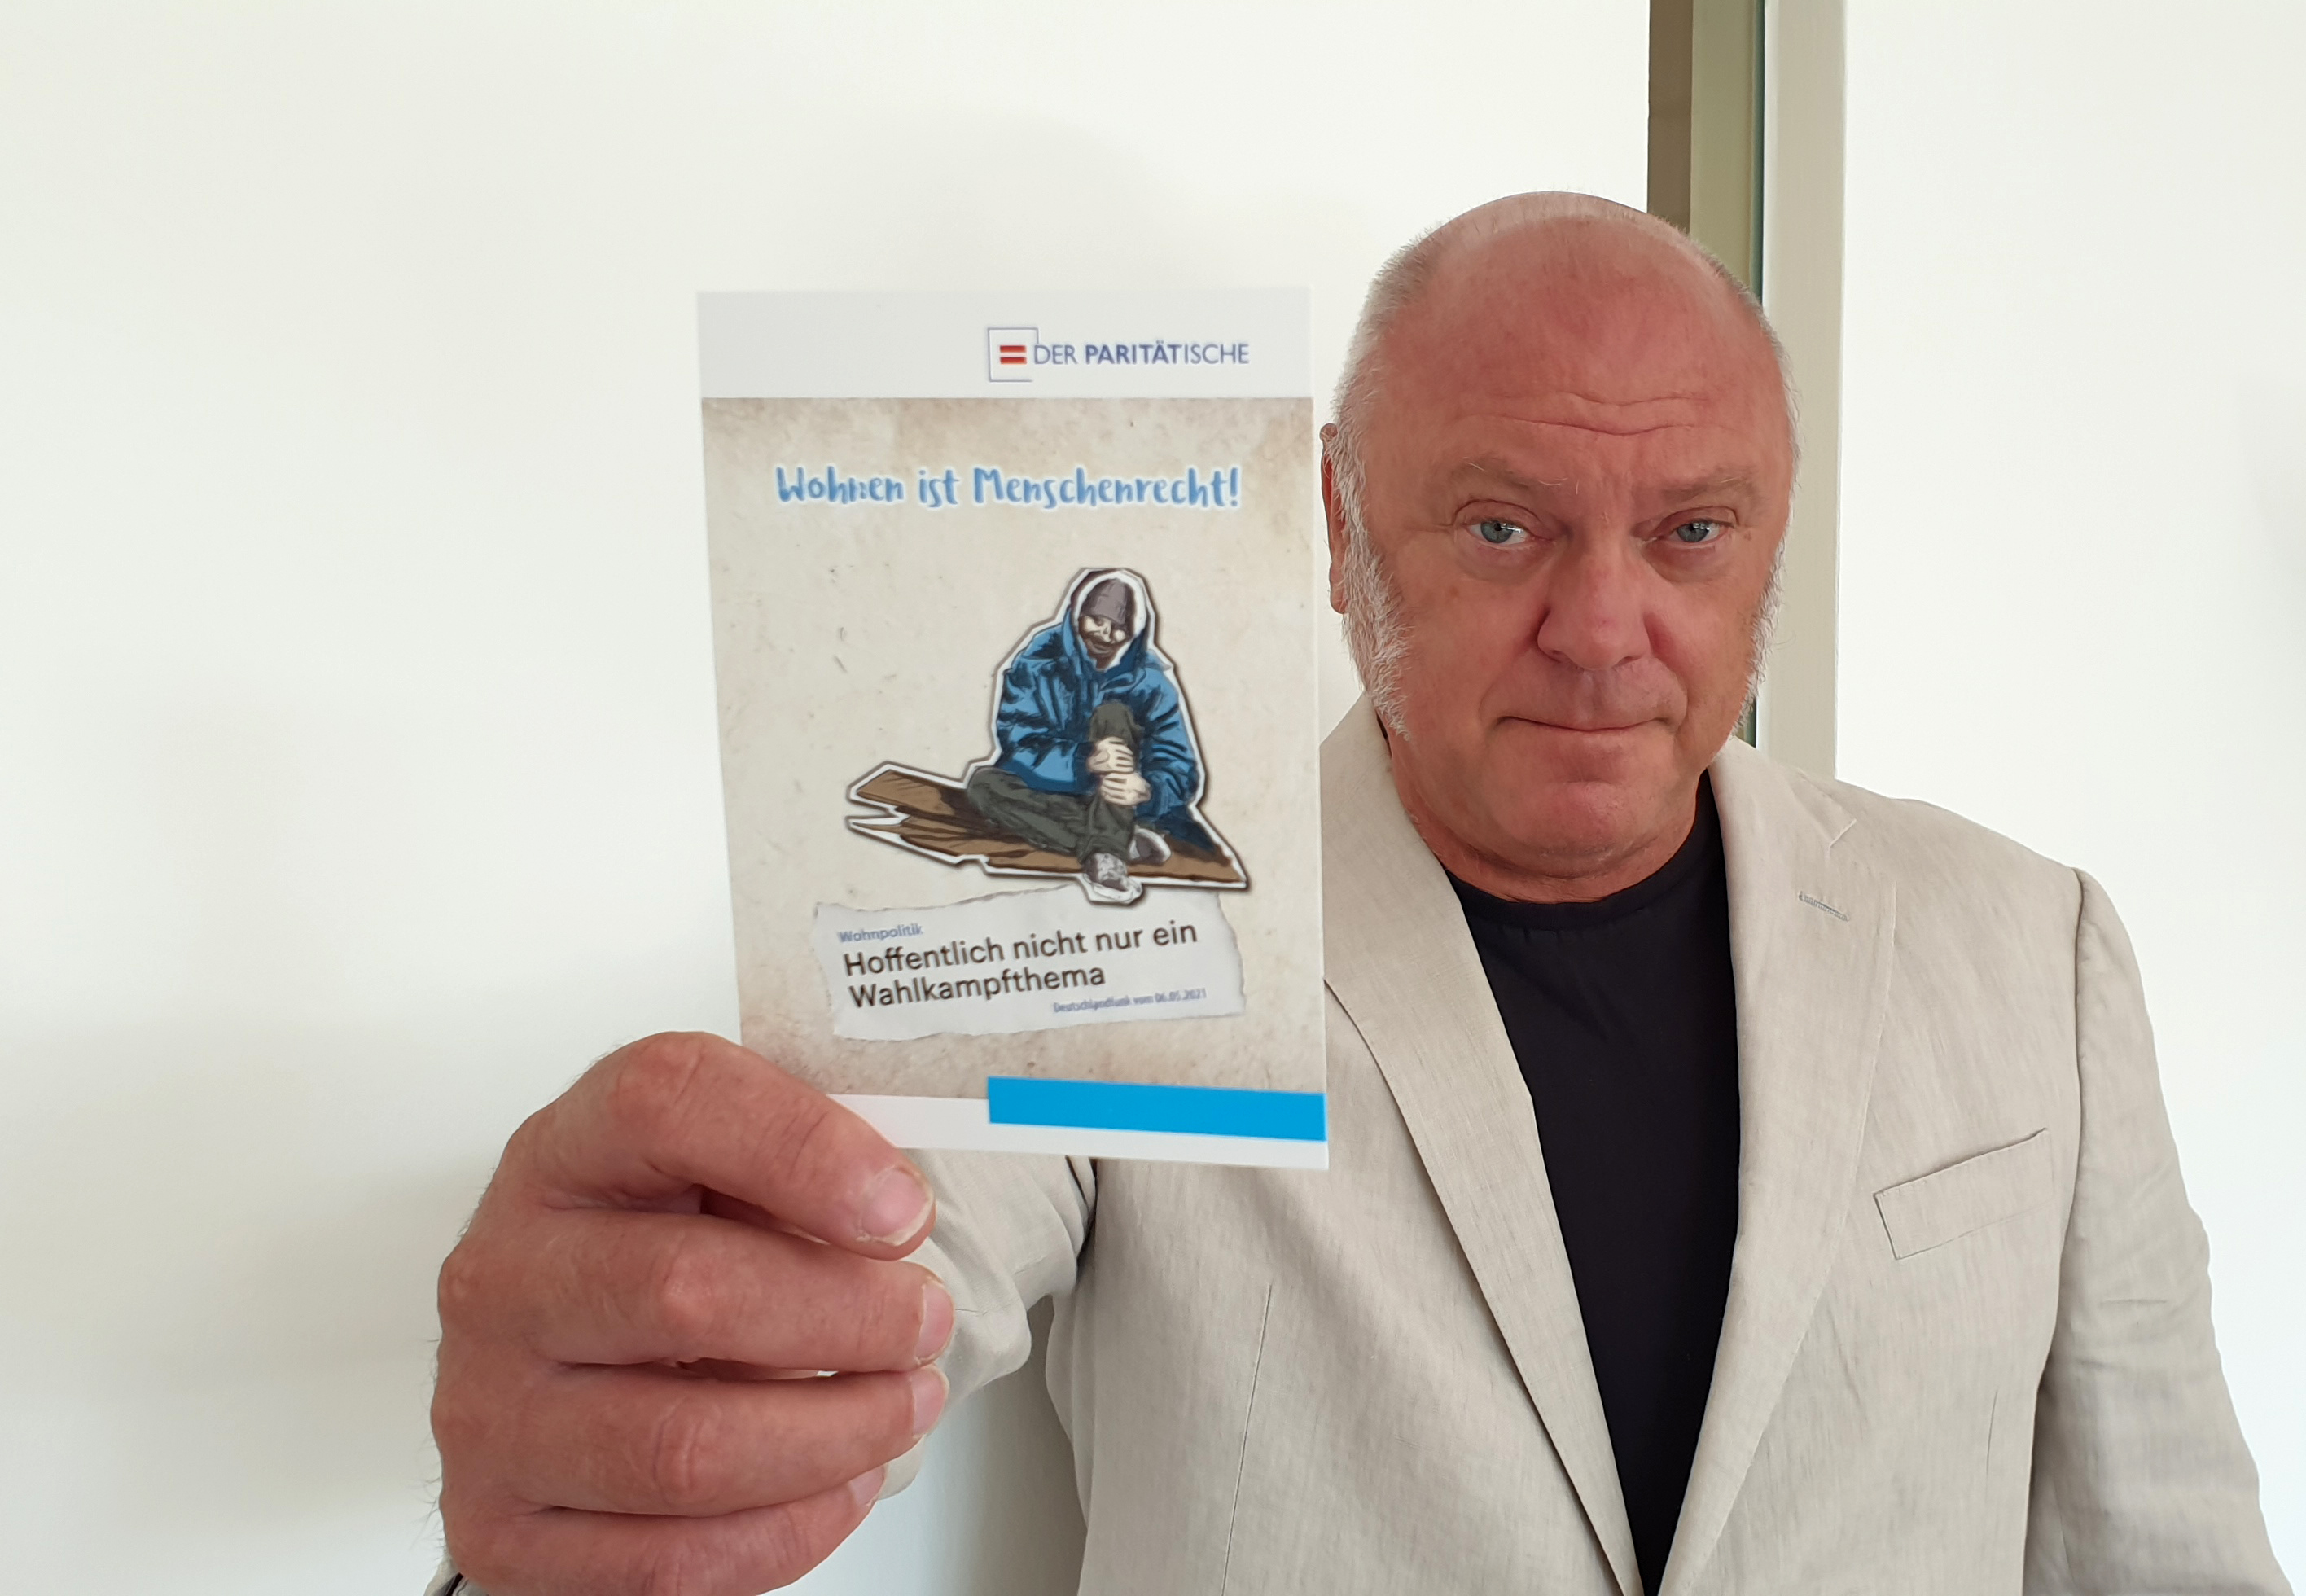 Ulrich Schneider, Hauptgeschäftsführer des Paritätischen Gesamtverbandes, hält eine Postkarte der Kampagne "Geh wählen, weil ALLE zählen" in die Kamera, die den Slogan "Wohnen ist Menschenrecht" zeigt.